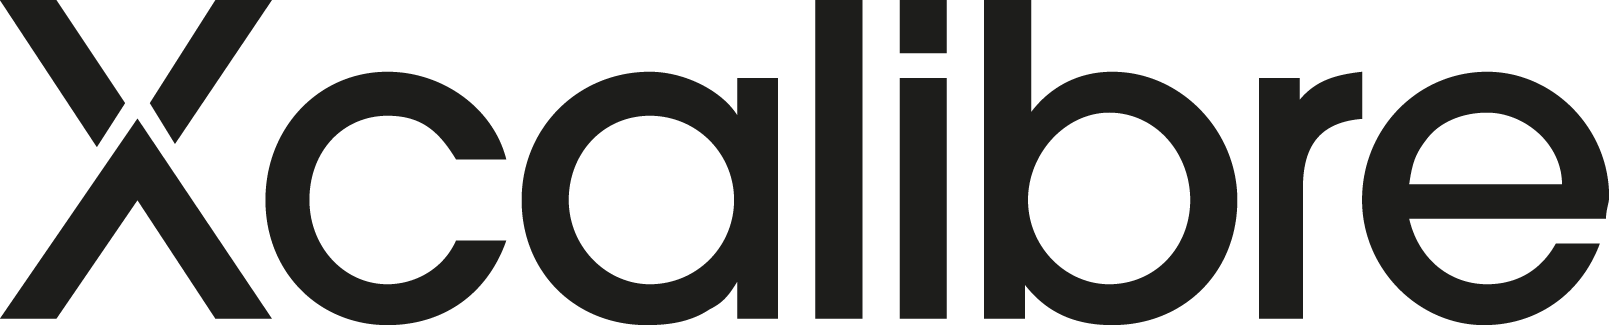 Xcalibre Logo